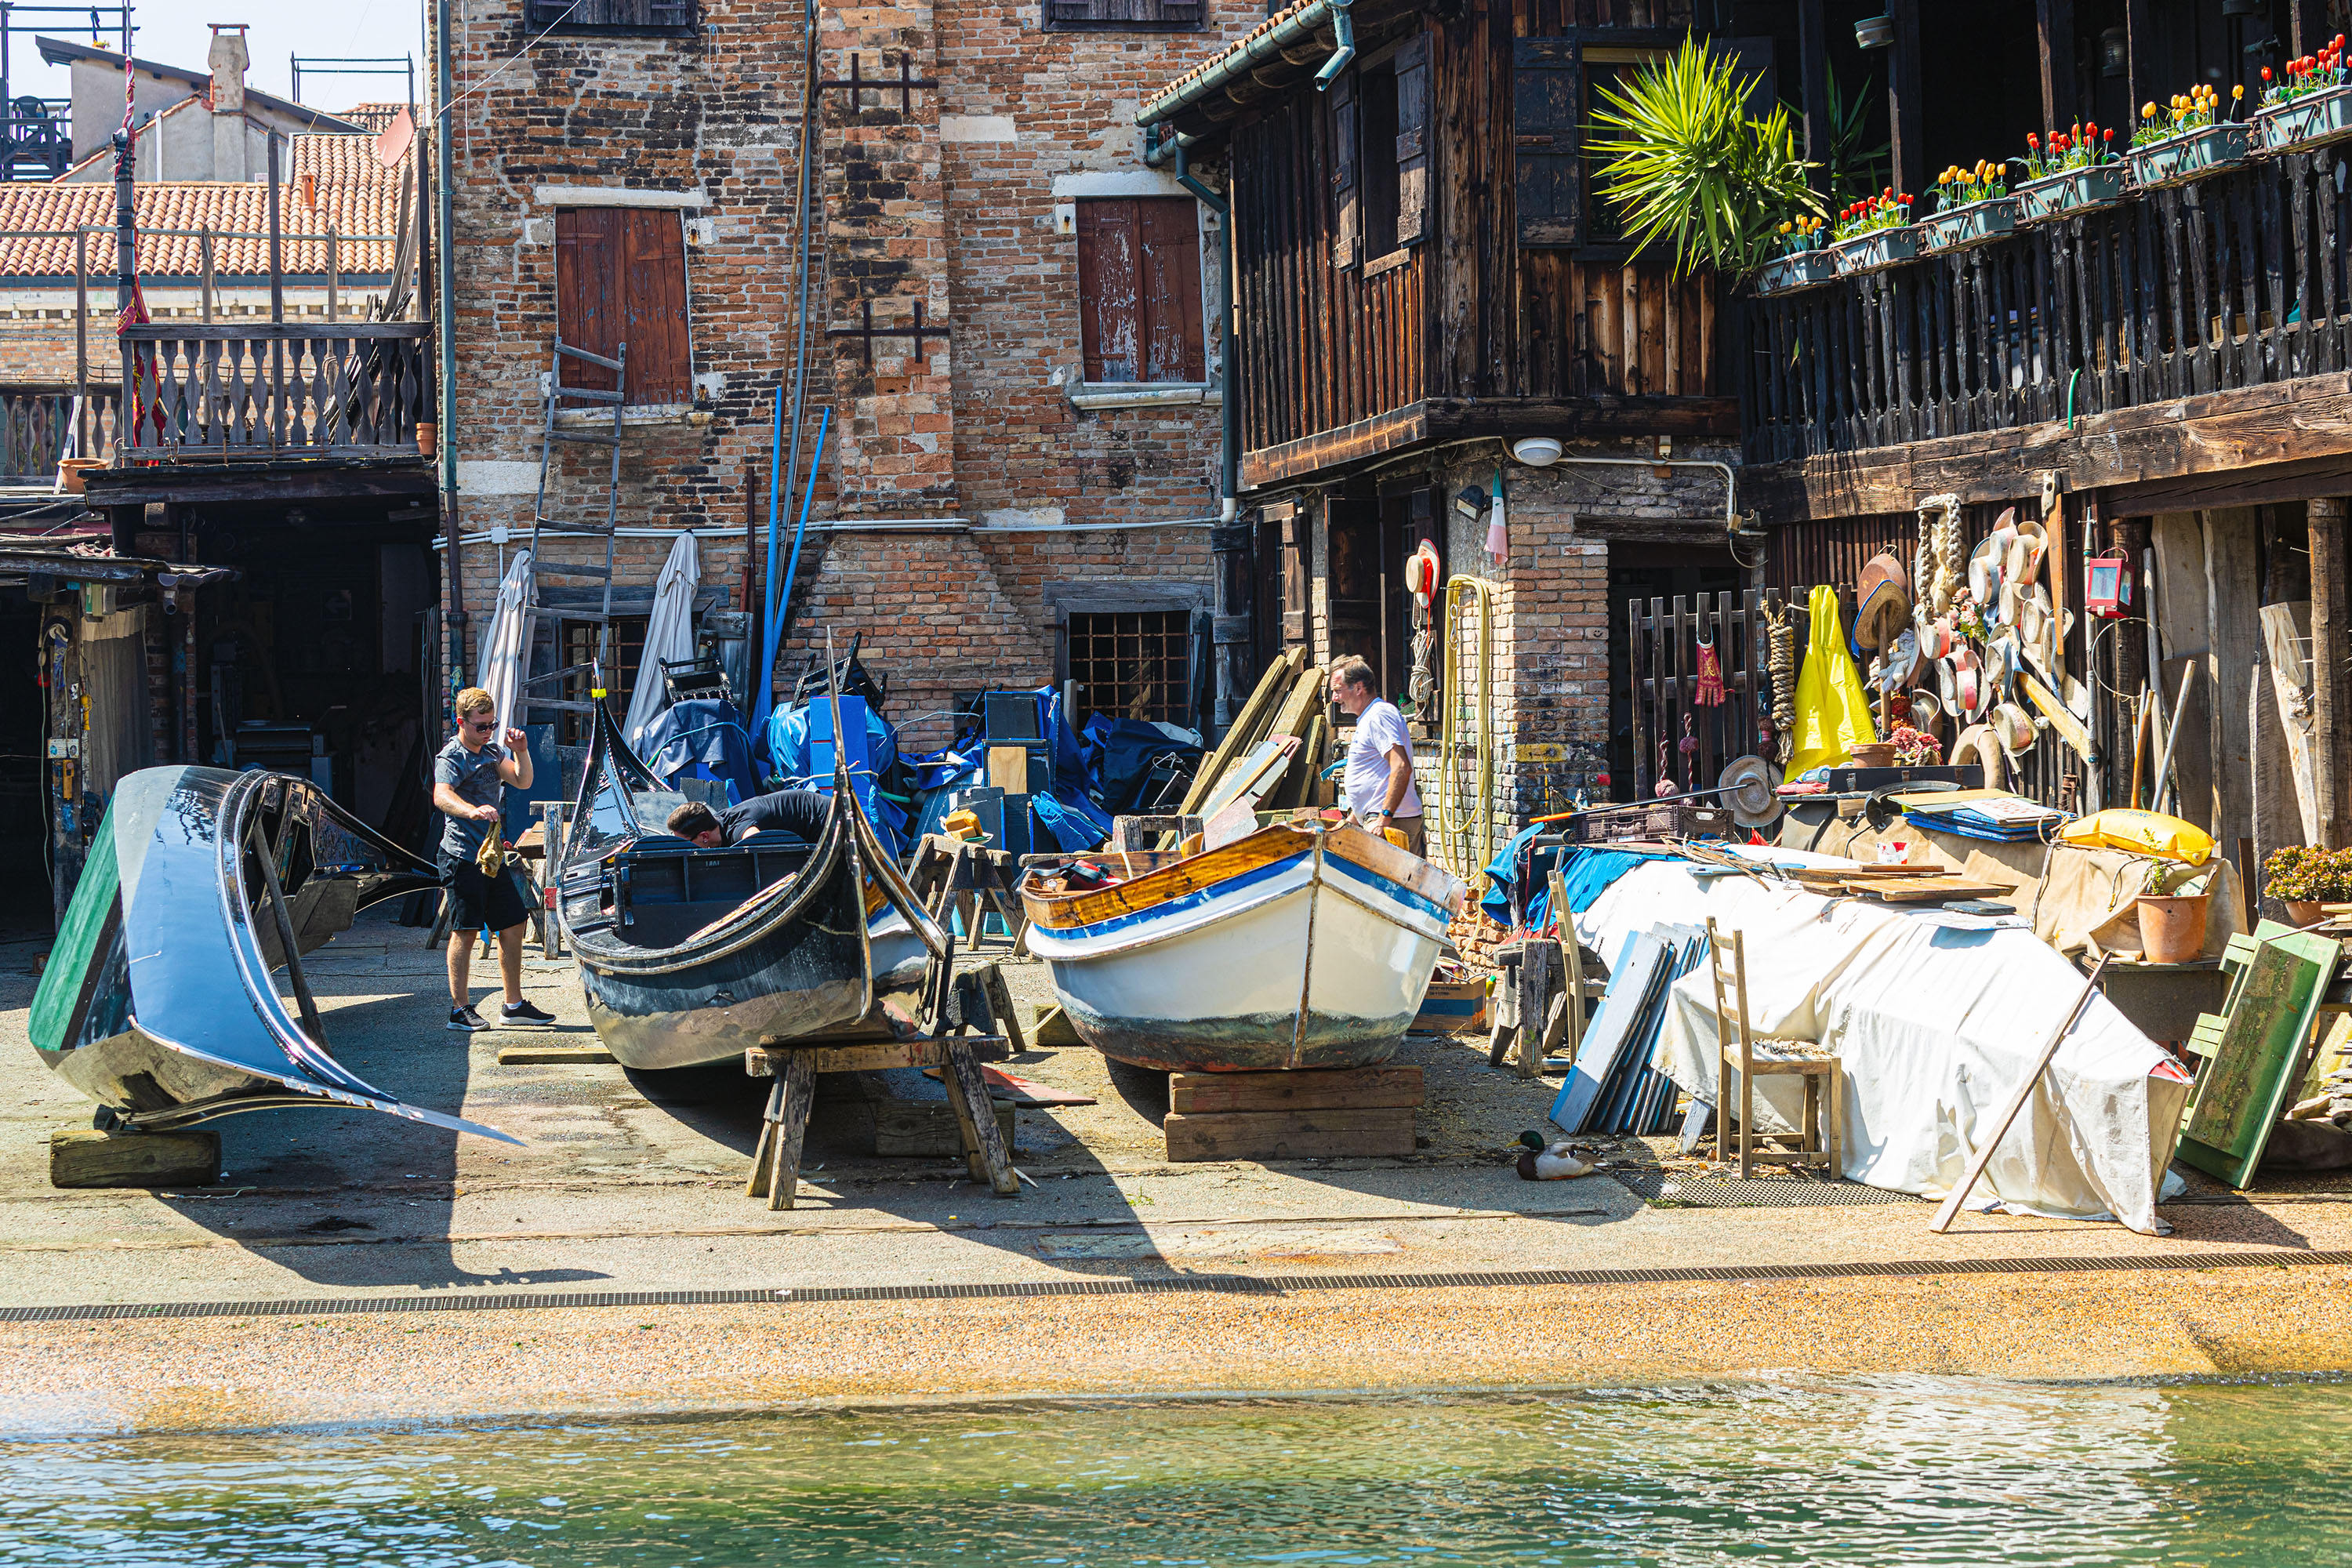 Venedig - Squero di San Trovaso, eine historische Schiffswerft